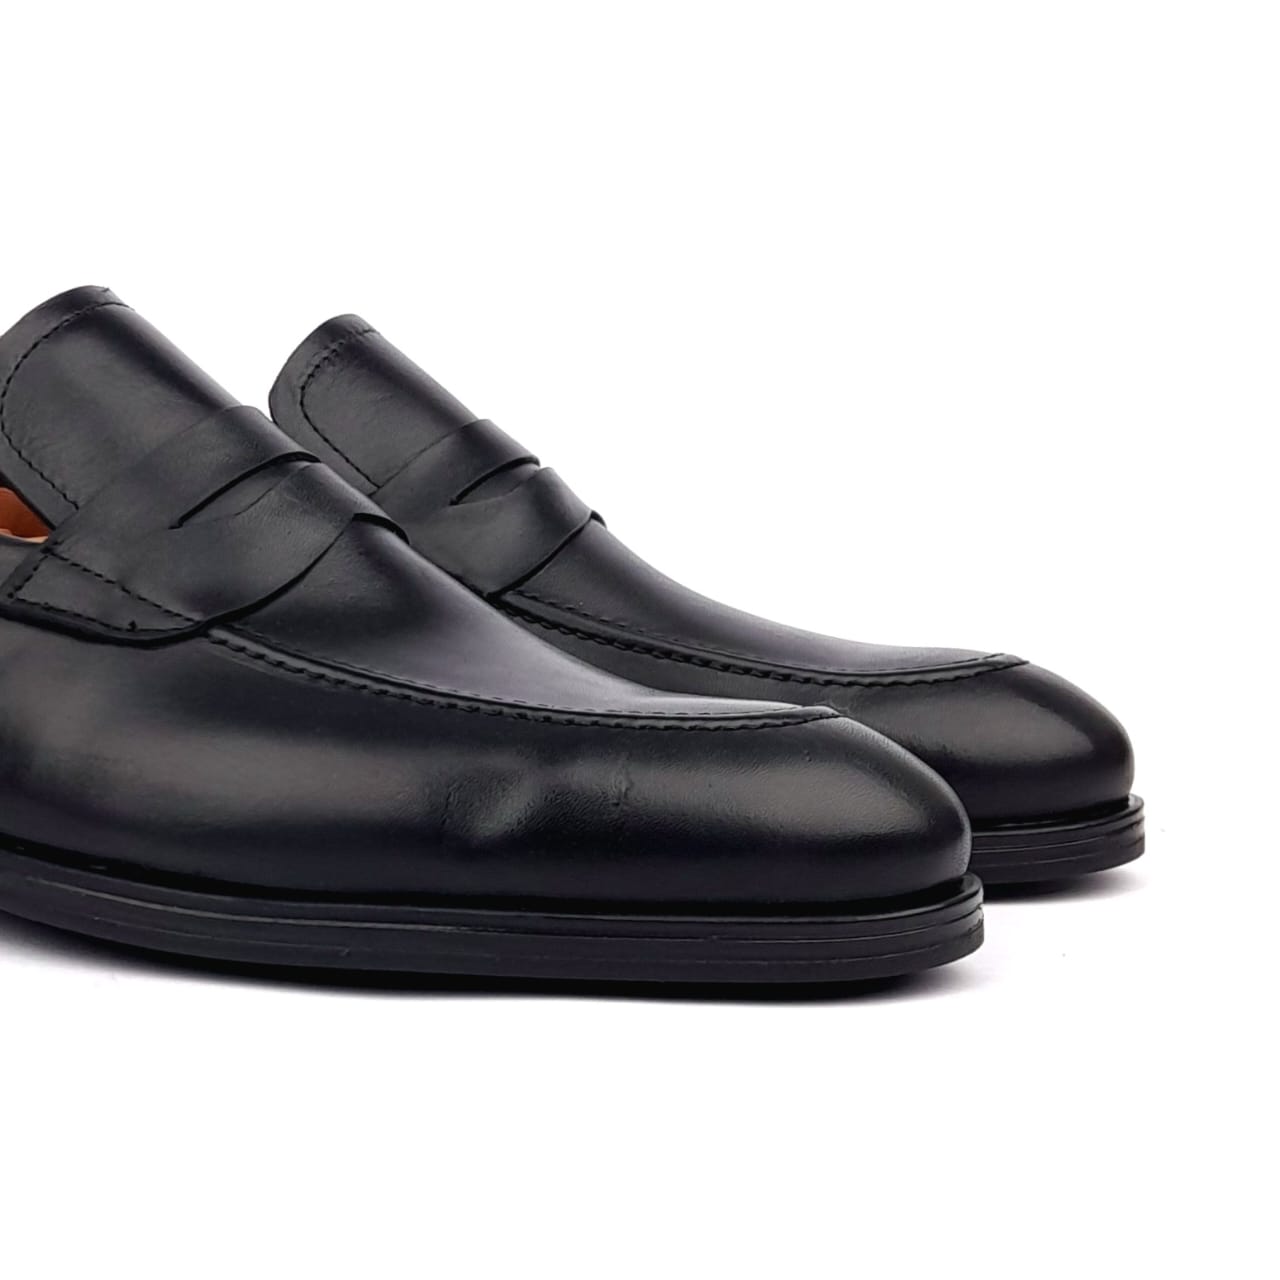 '5106 Chaussure cuir Noir